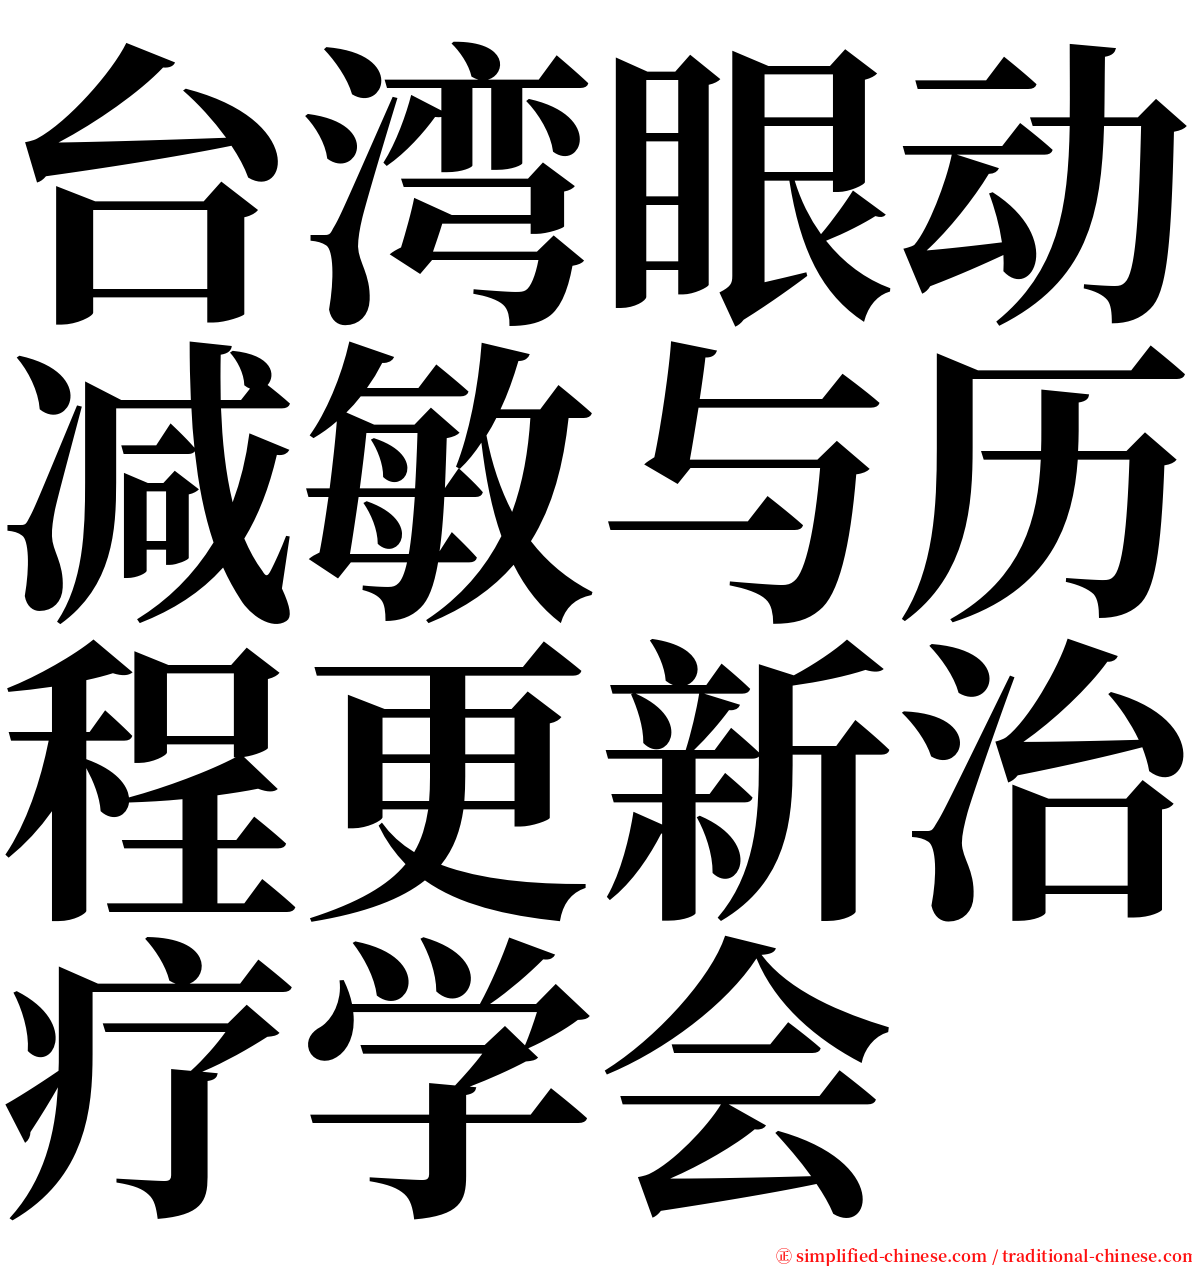 台湾眼动减敏与历程更新治疗学会 serif font